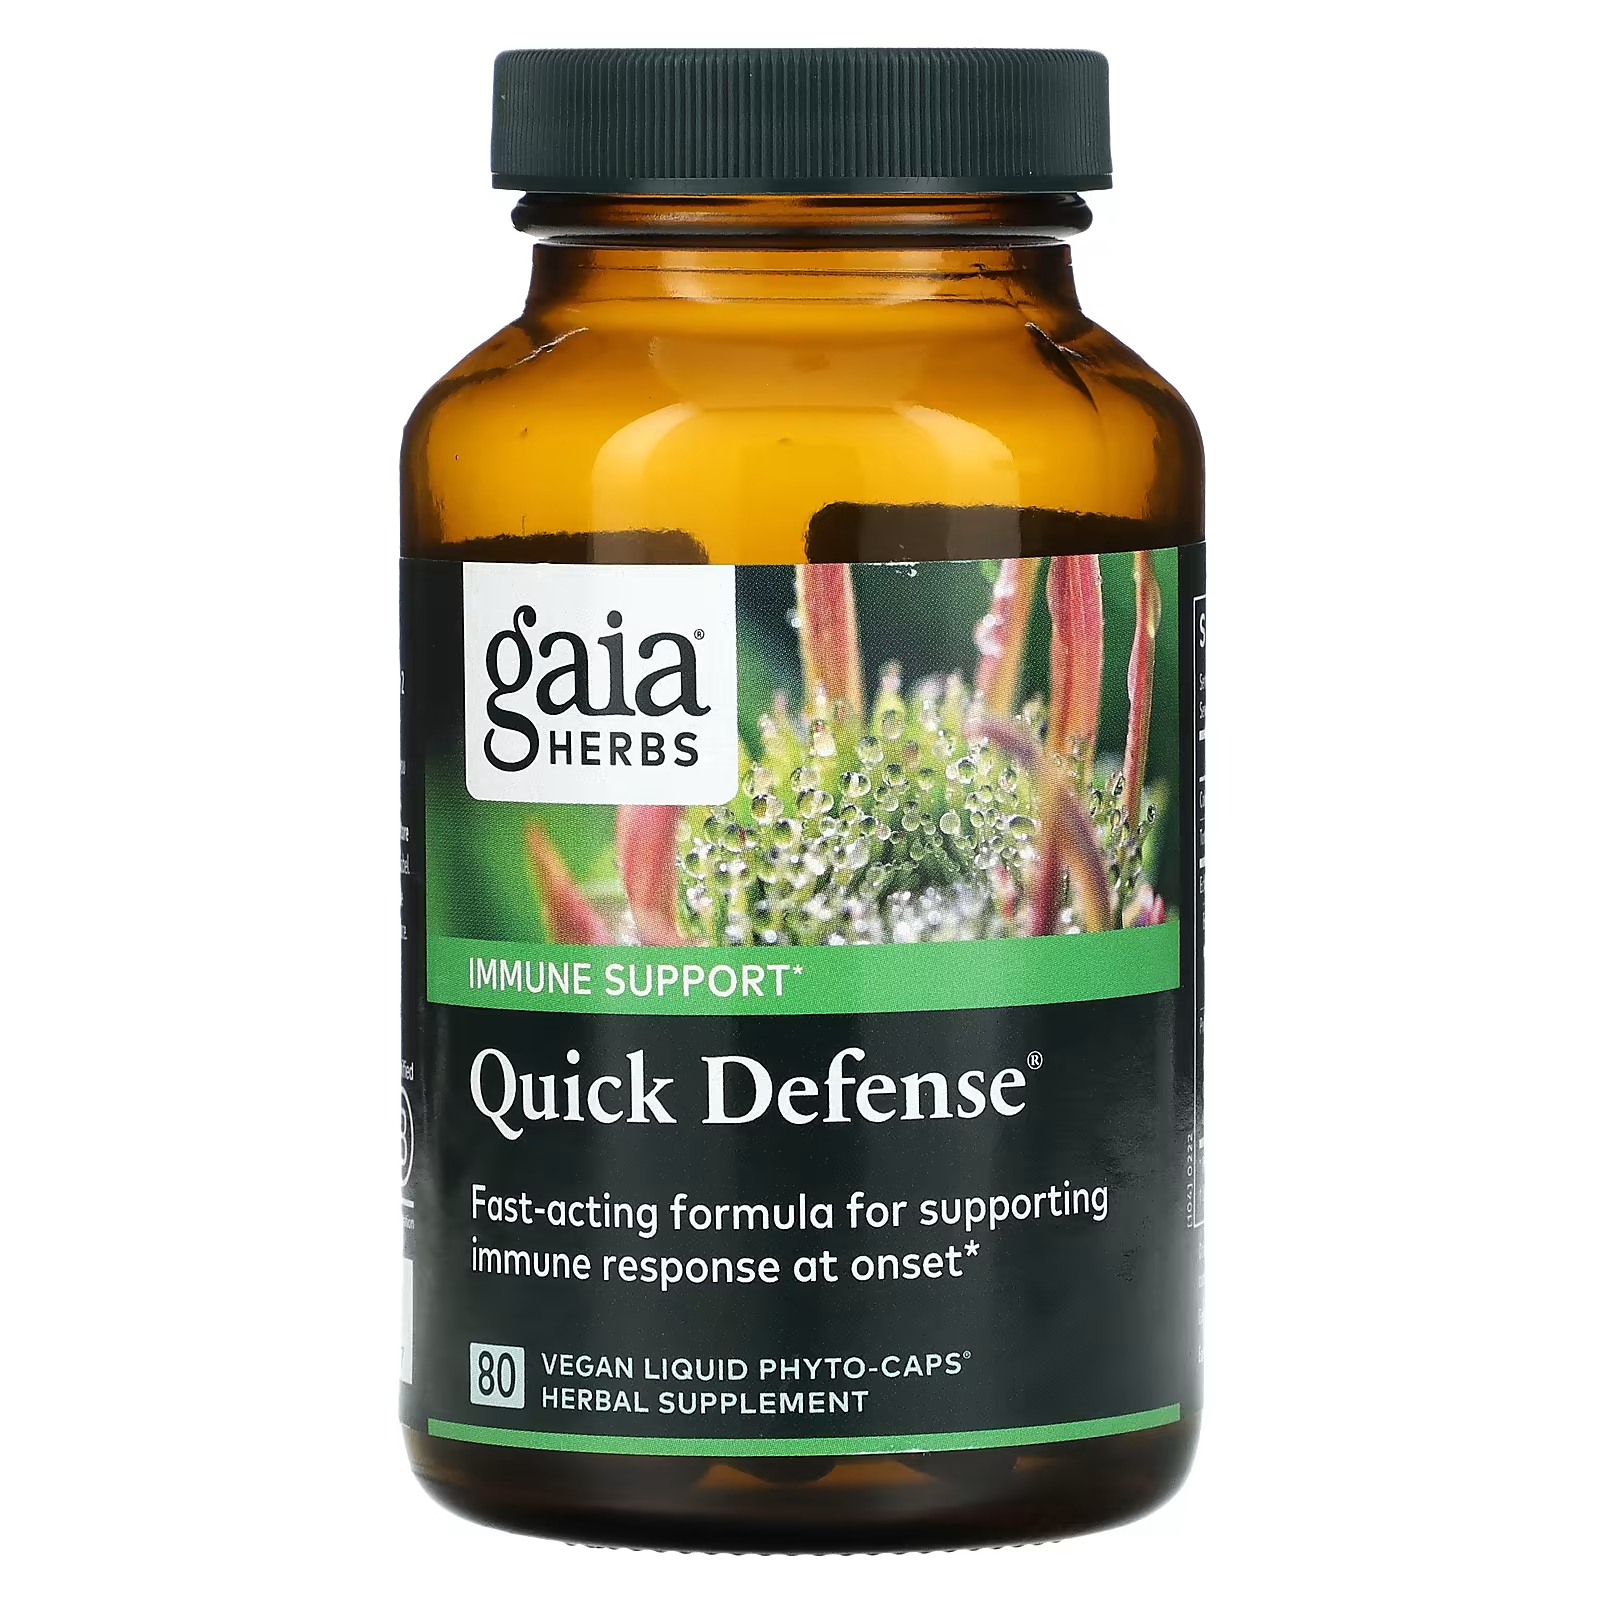 Пищевая добавка Gaia Herbs Quick Defense, 80 веганских жидких фито-капсул